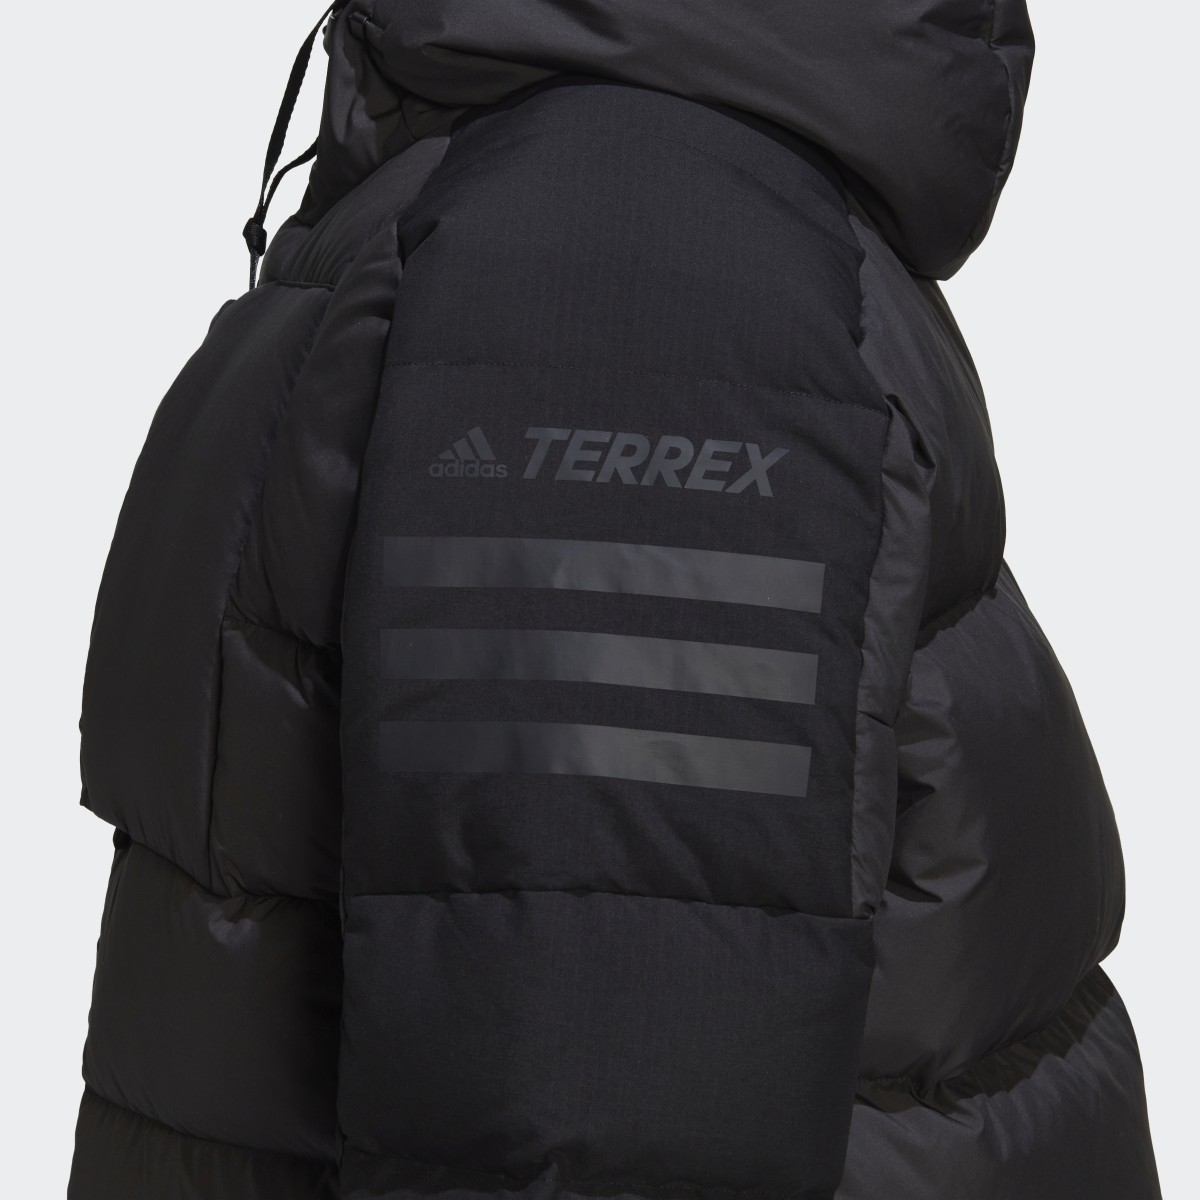 Adidas Terrex Xploric Down Jacket. 8